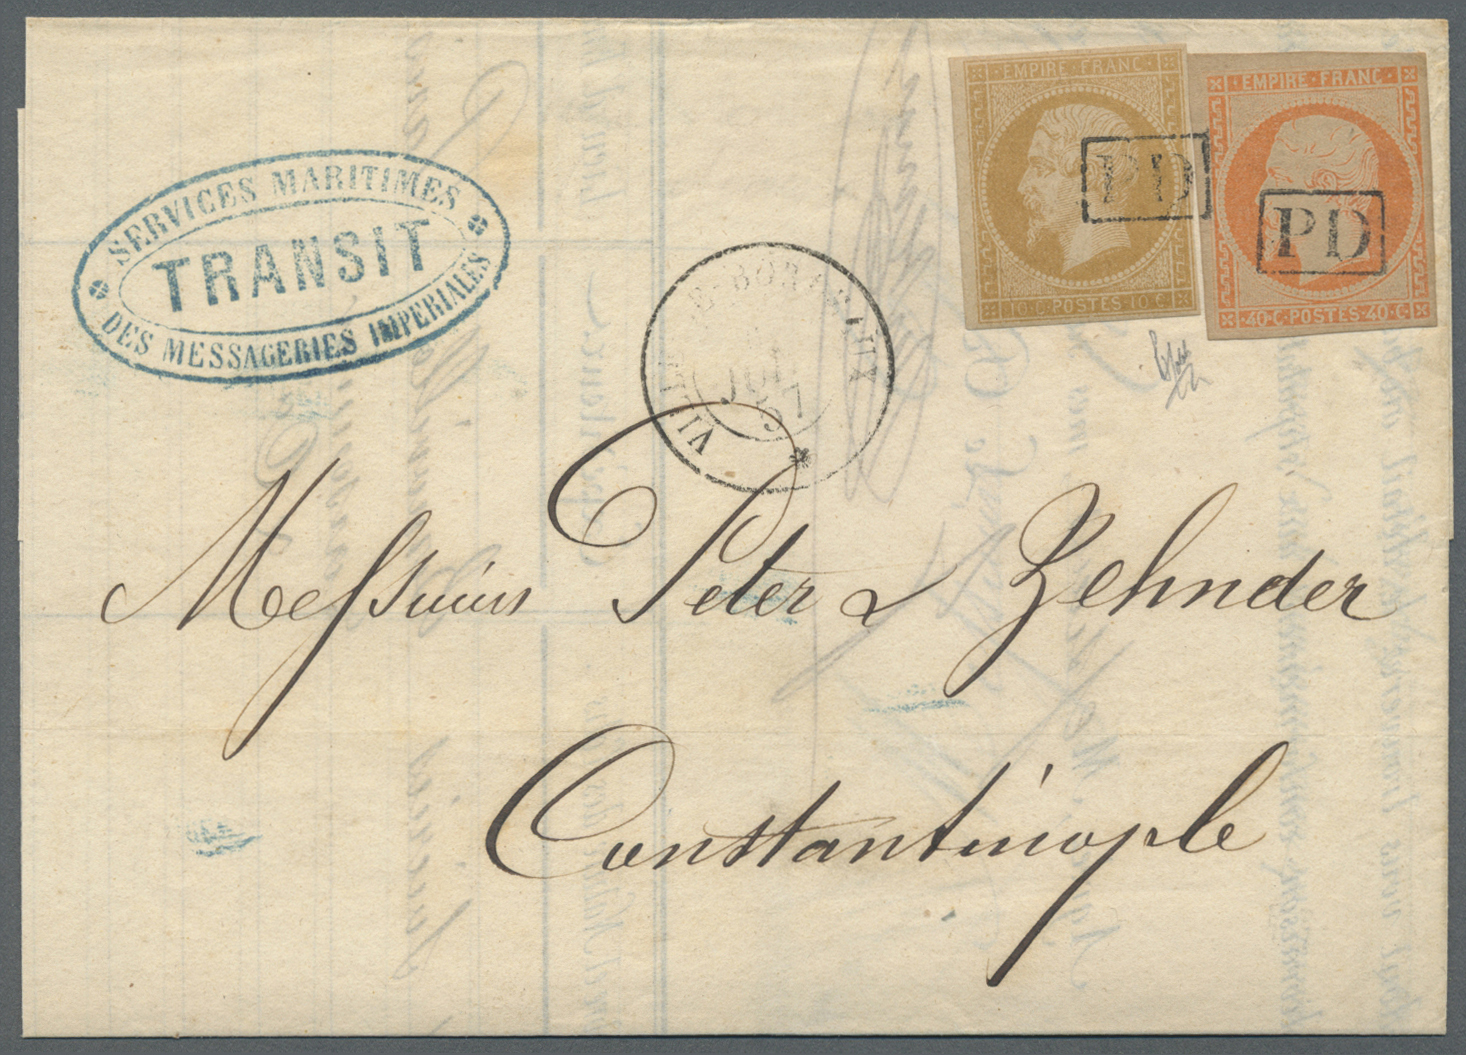 Br Frankreich: 1857, 10c. Bistre And 40c. Orange "Empire Nd" (slight Oxidation), Both Full Margins, On Lettershee - Used Stamps